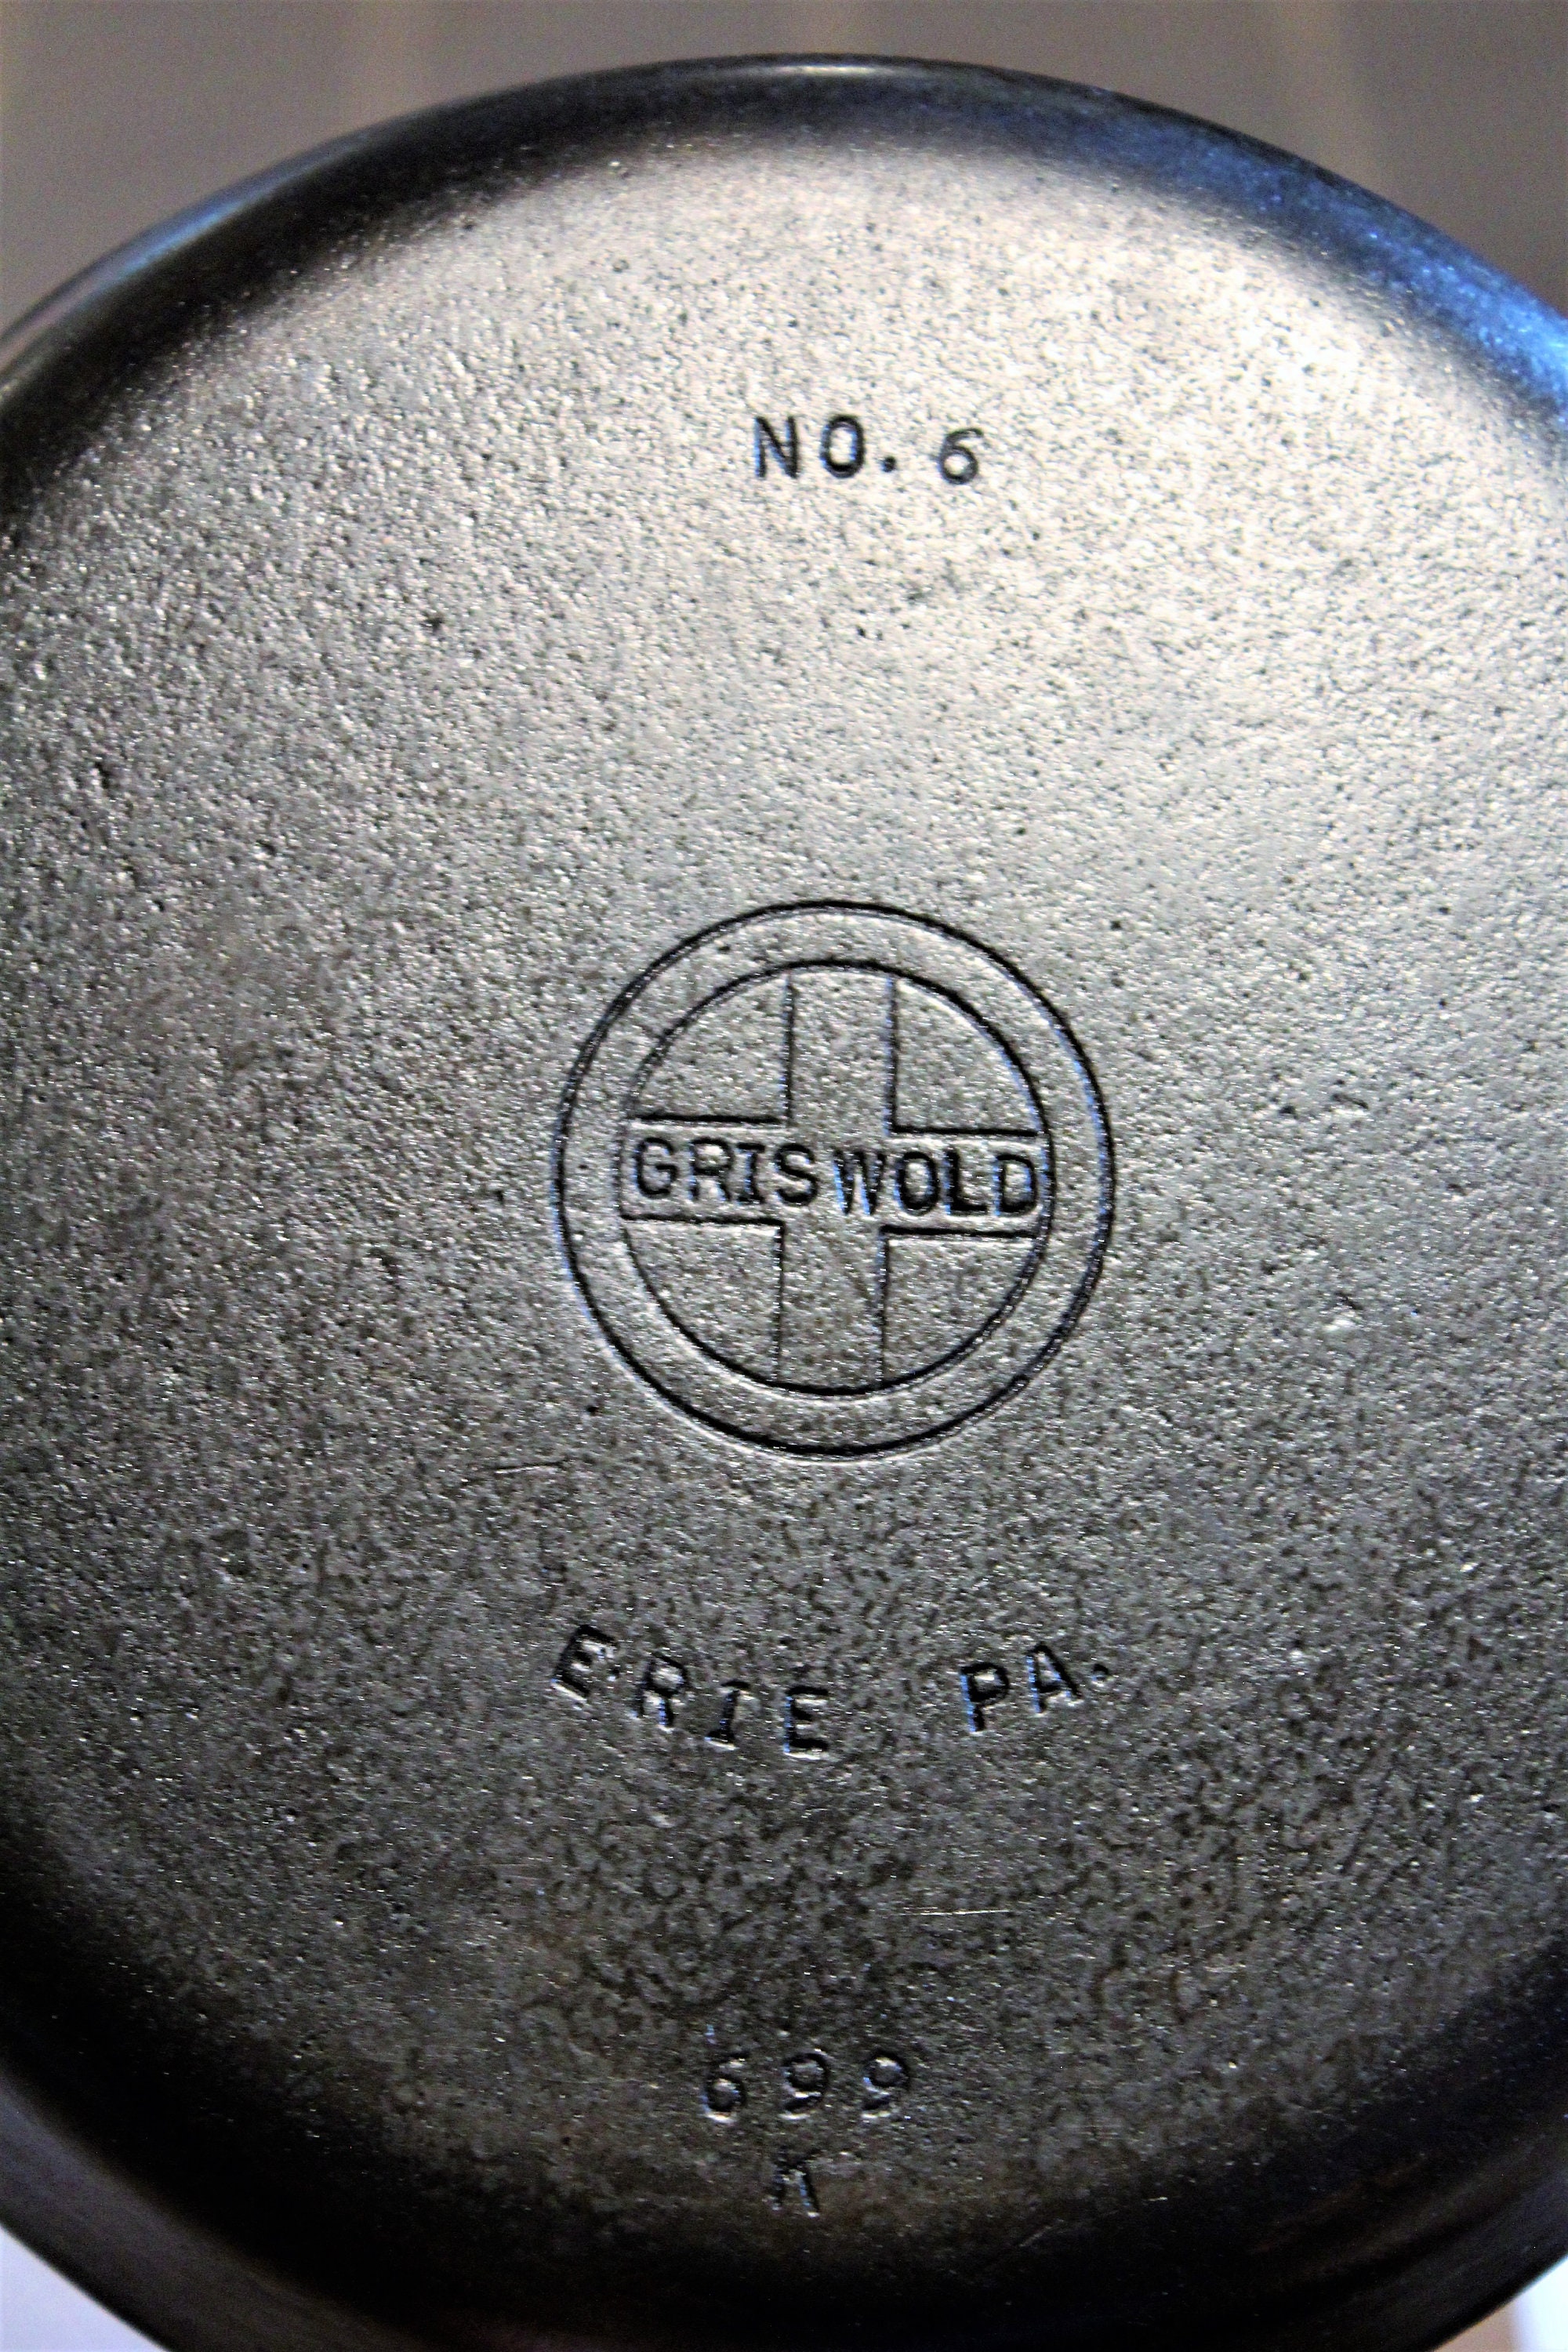 Griswold Cast Iron Skillet #6, 699 K